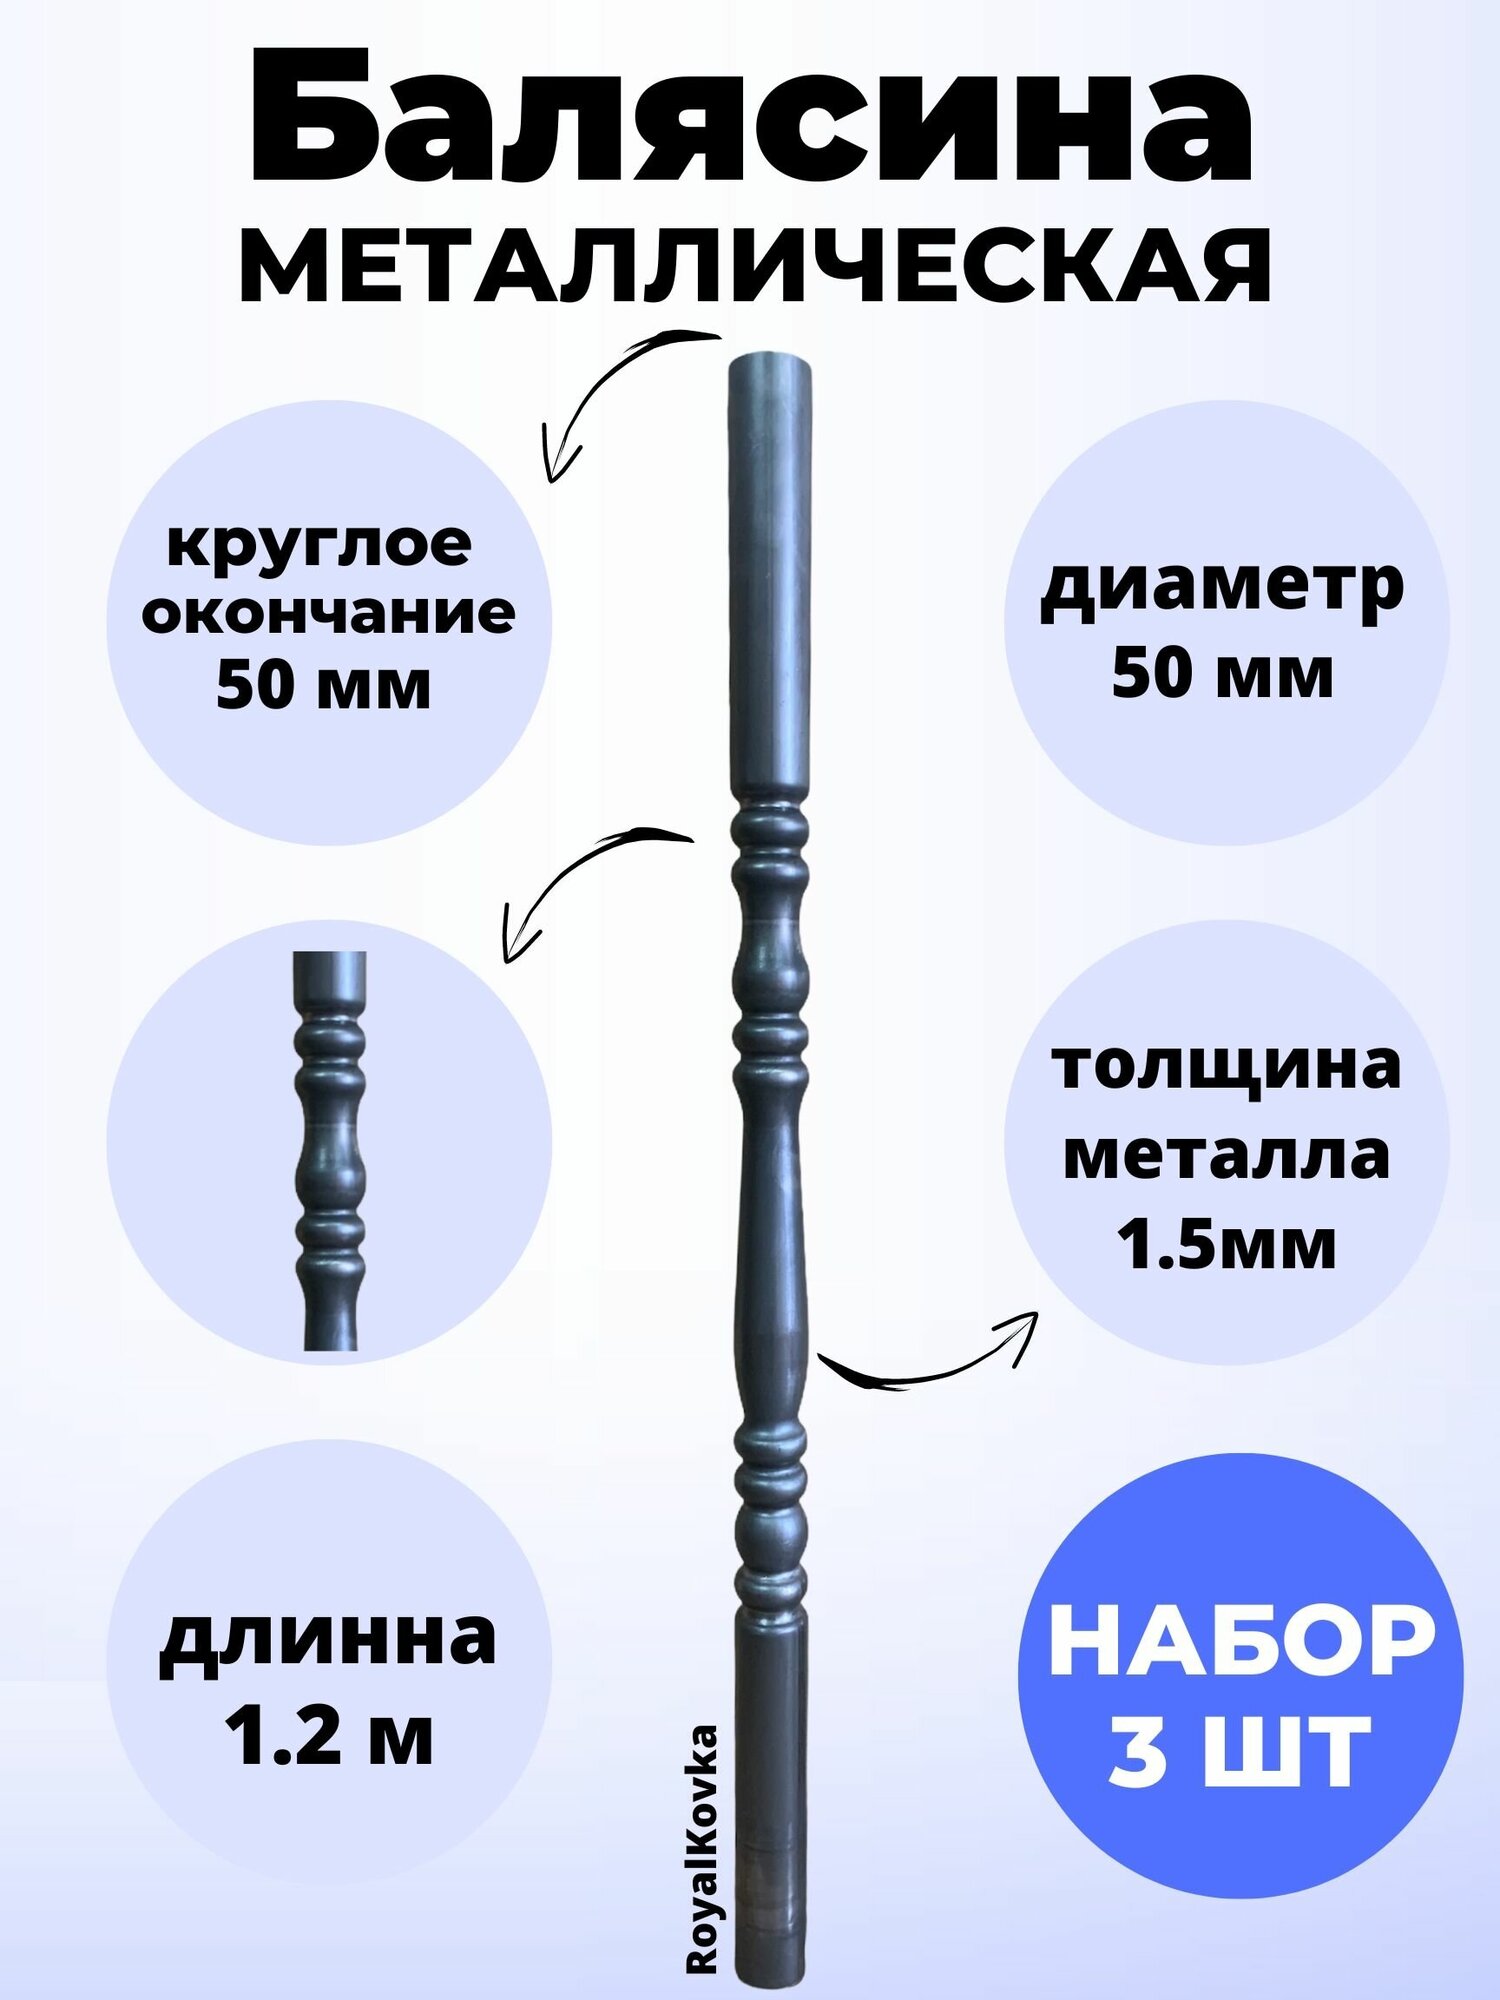 Набор балясин кованых металлических Royal Kovka, 3 шт, диаметр 50 мм, круглые окончания диаметром 50 мм, арт. 50.2 КР-1,2м-3